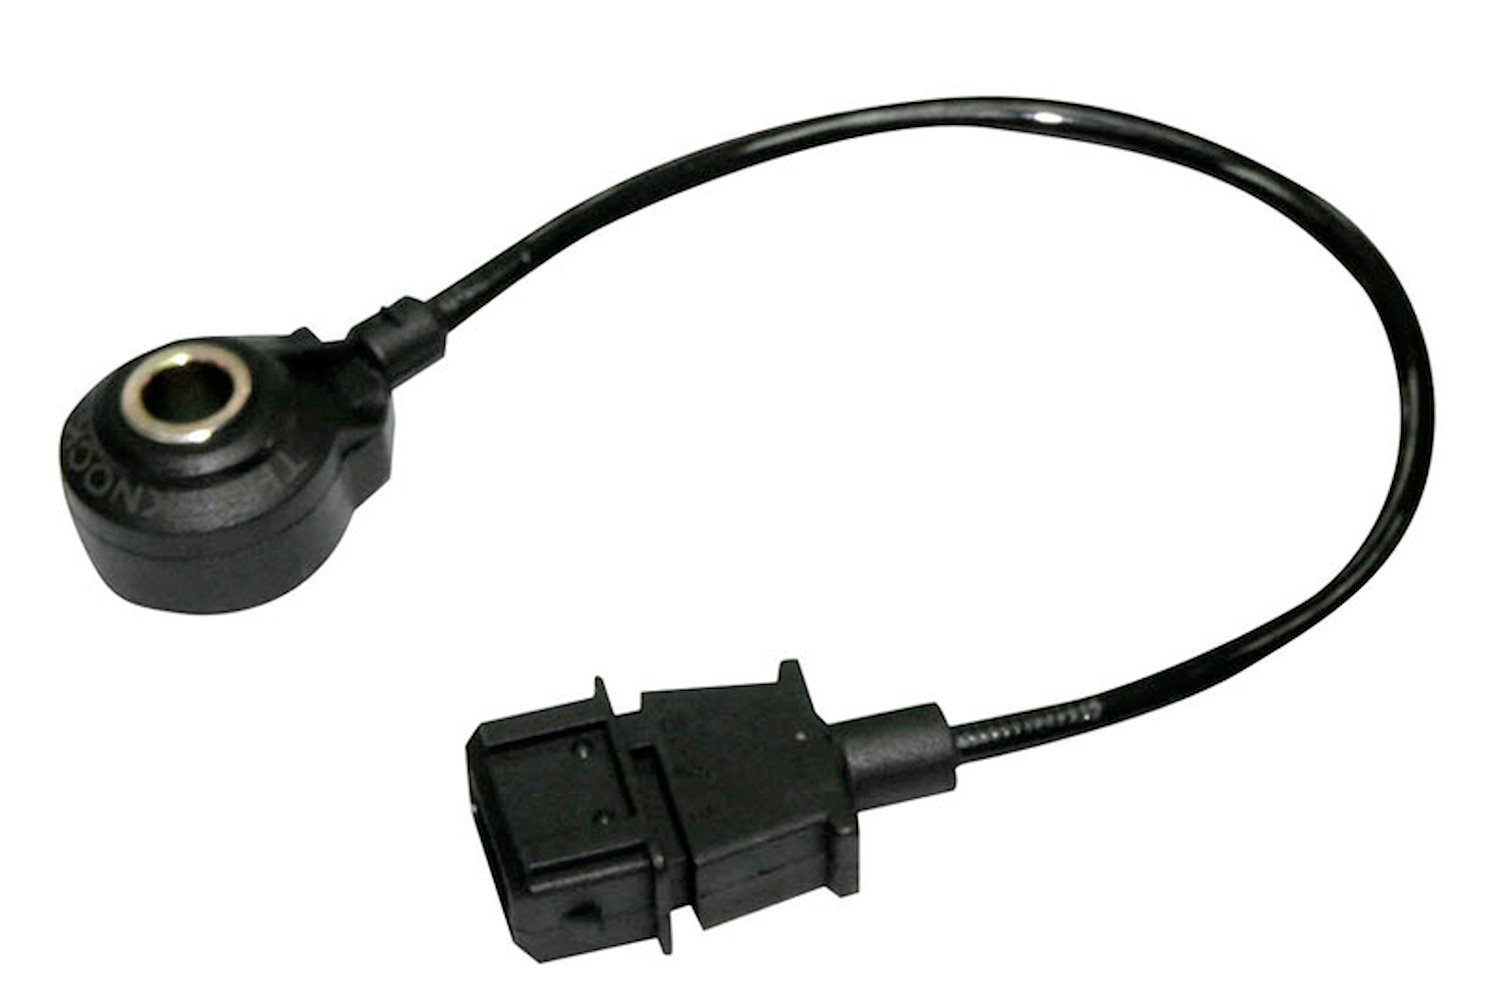 HT-070105 Knock Sensor Only, For 2014 Pro Tuner 'Knock Ears' Kit